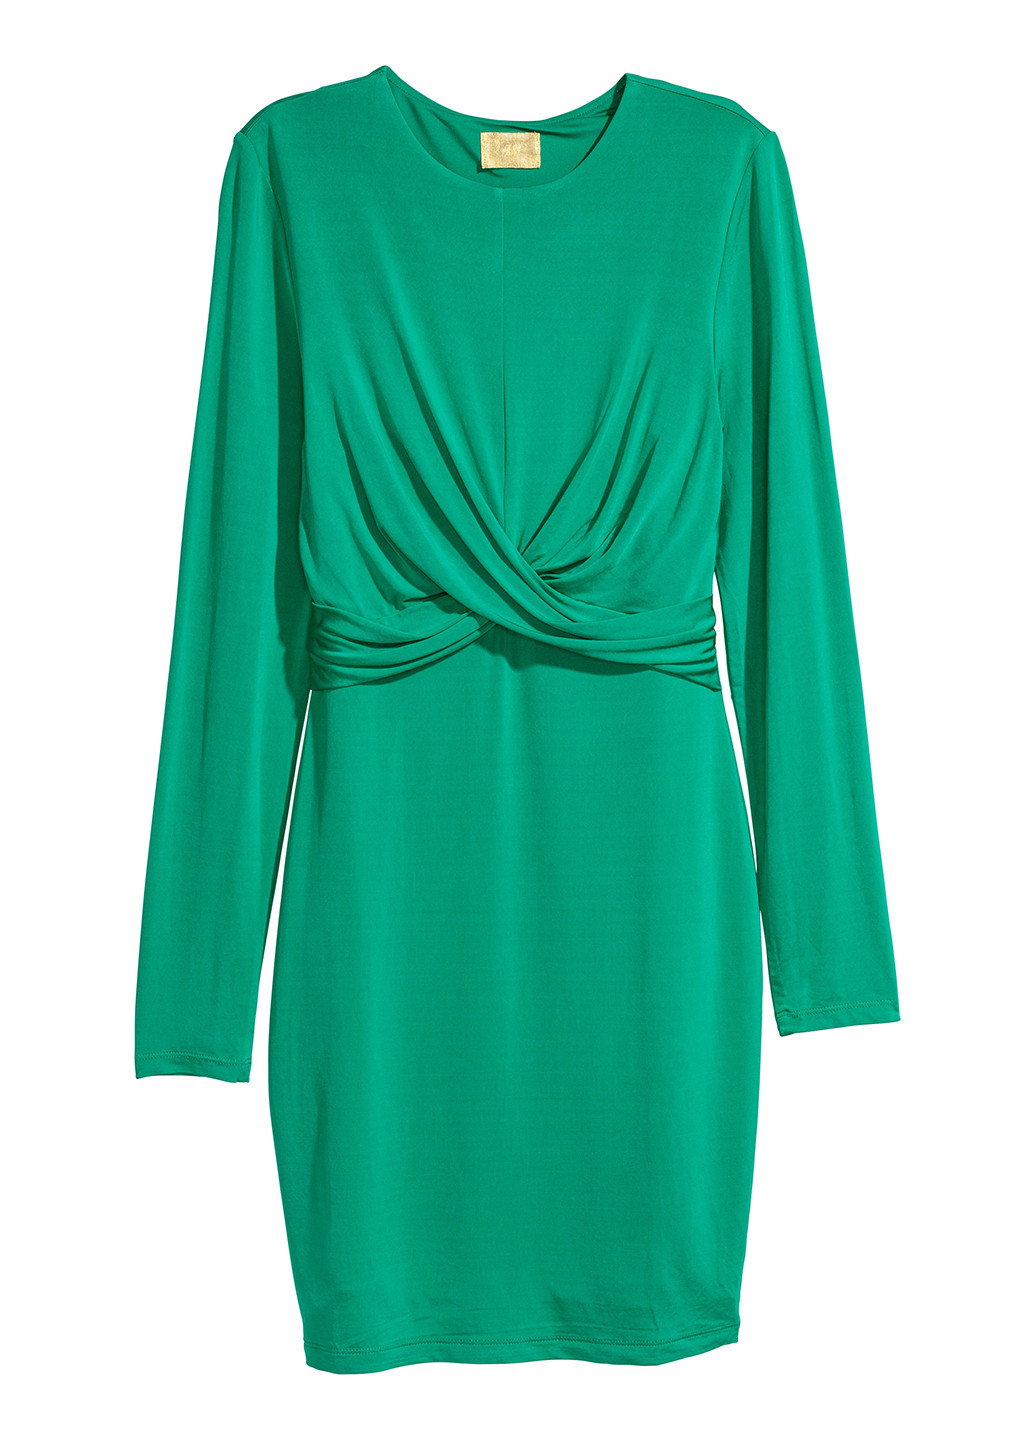 Зеленое коктейльное платье футляр H&M однотонное